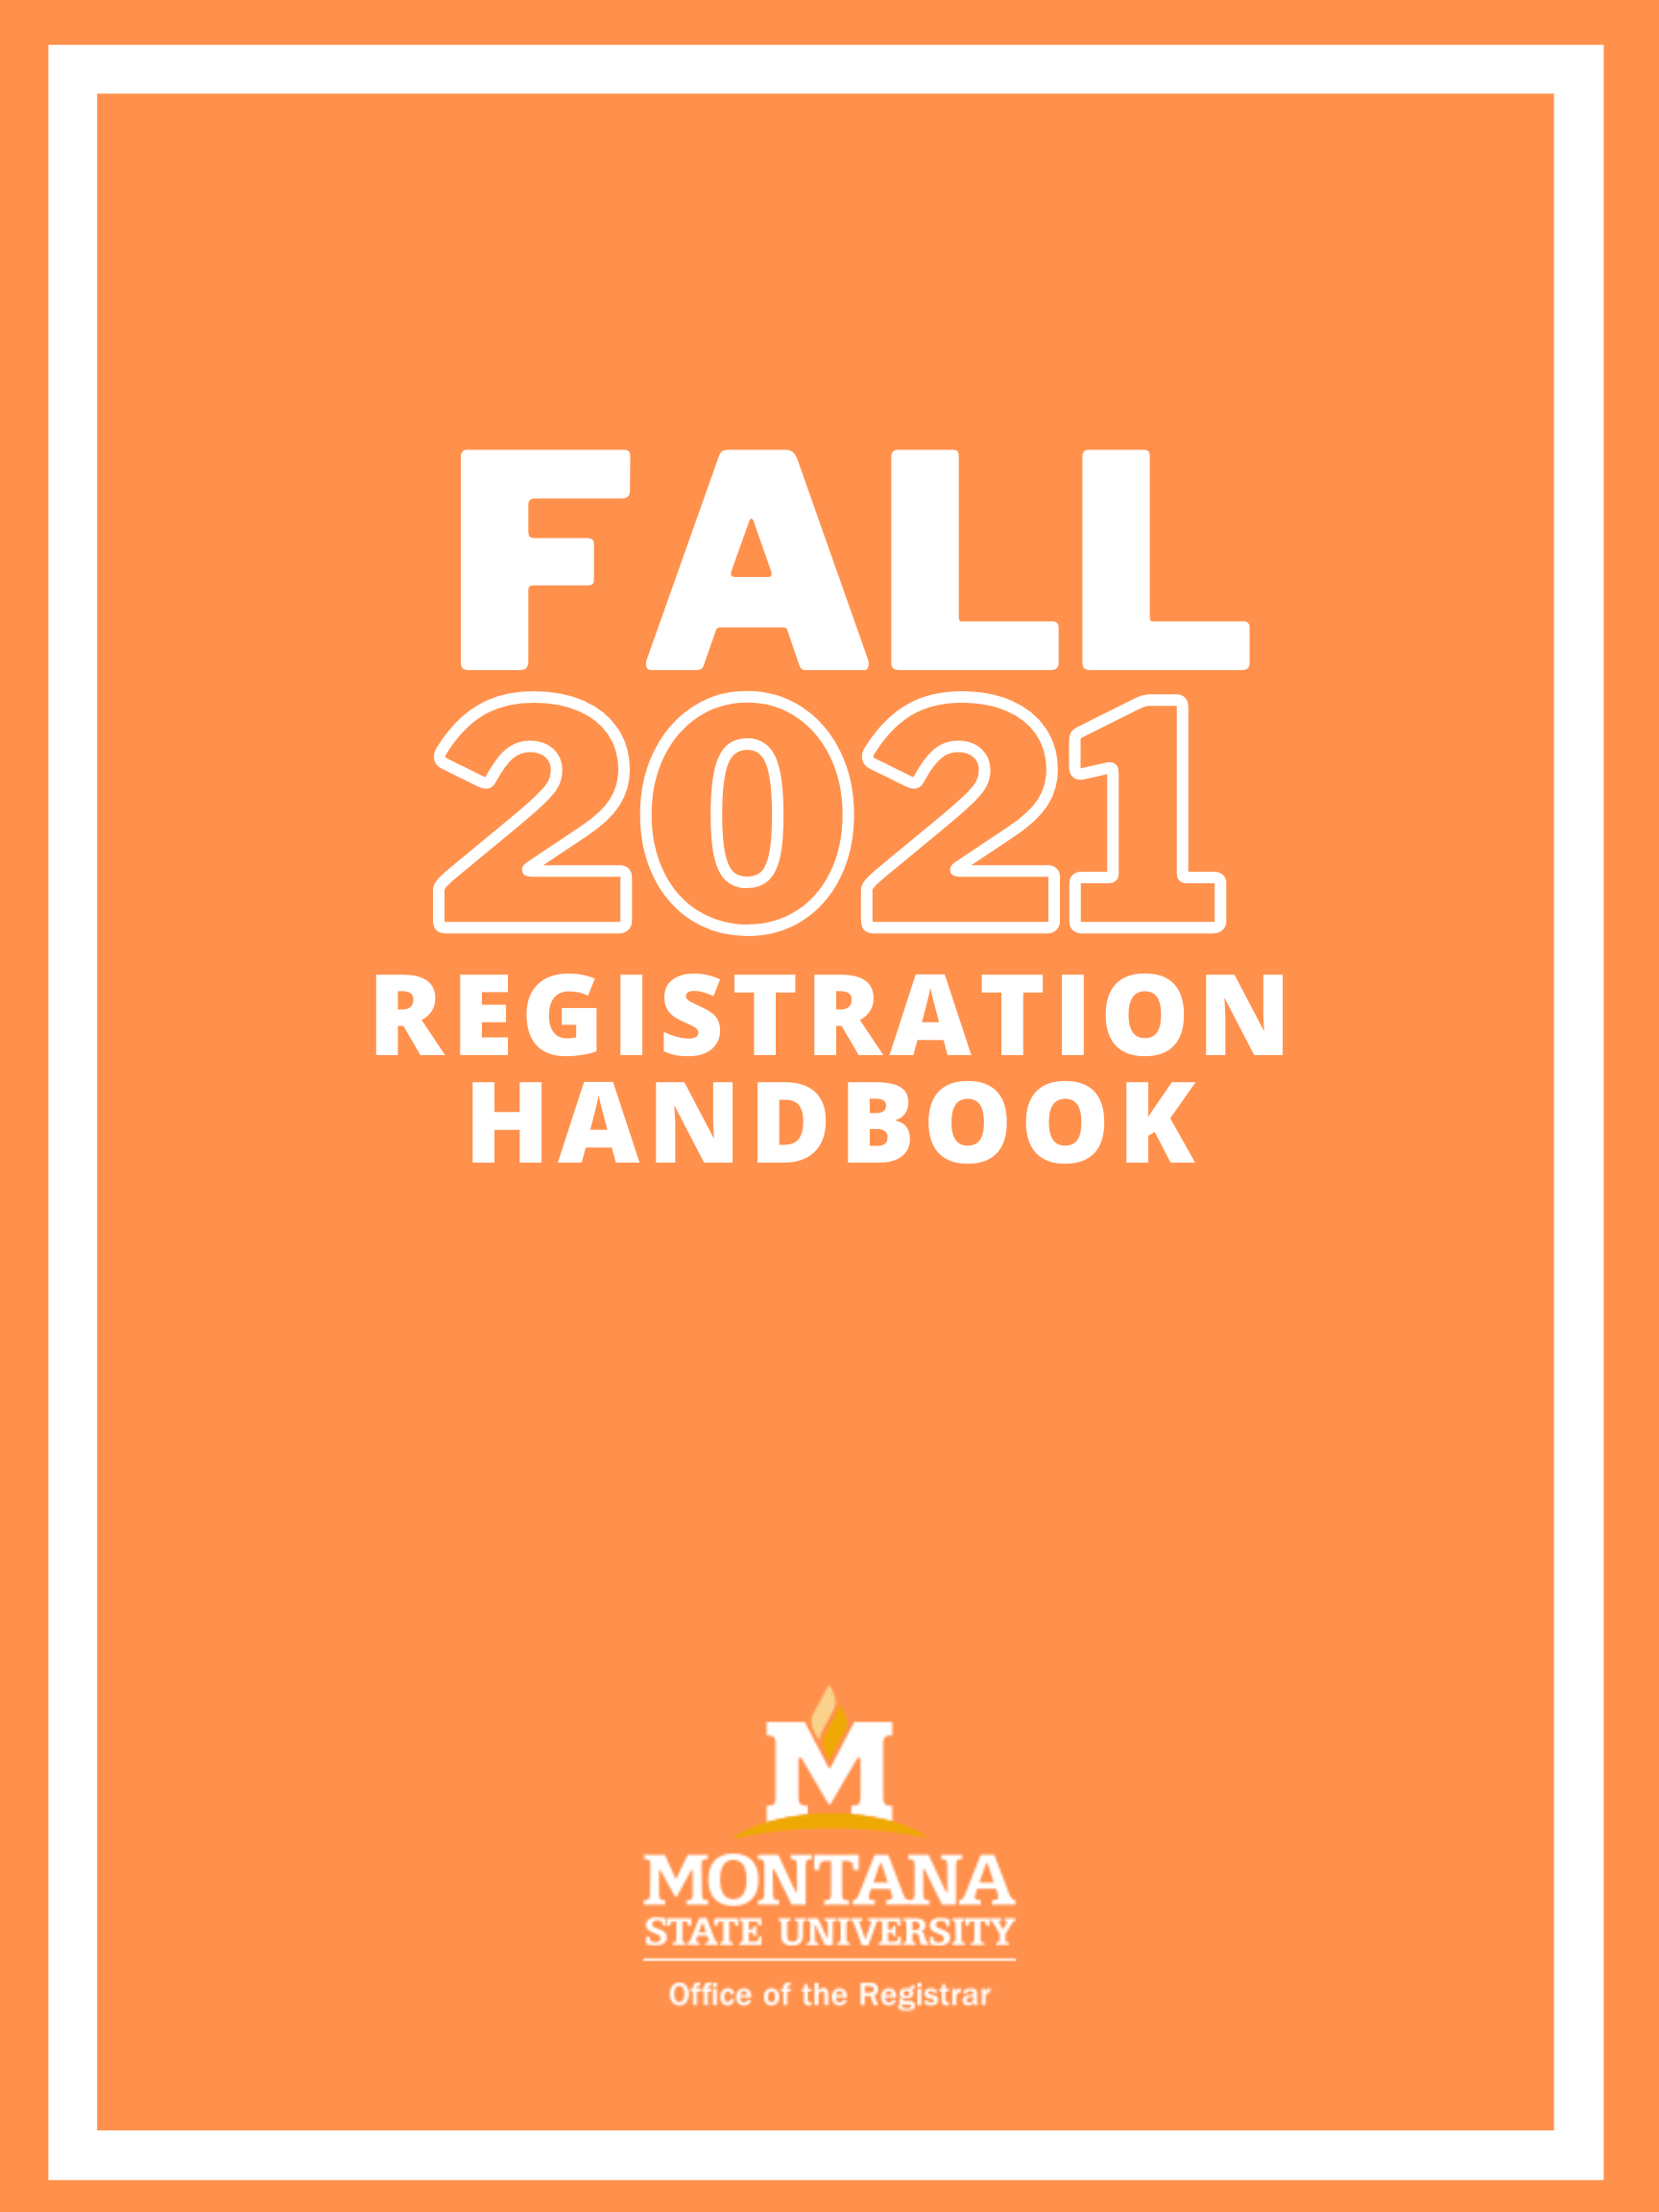 Registration Handbook Fall 2021